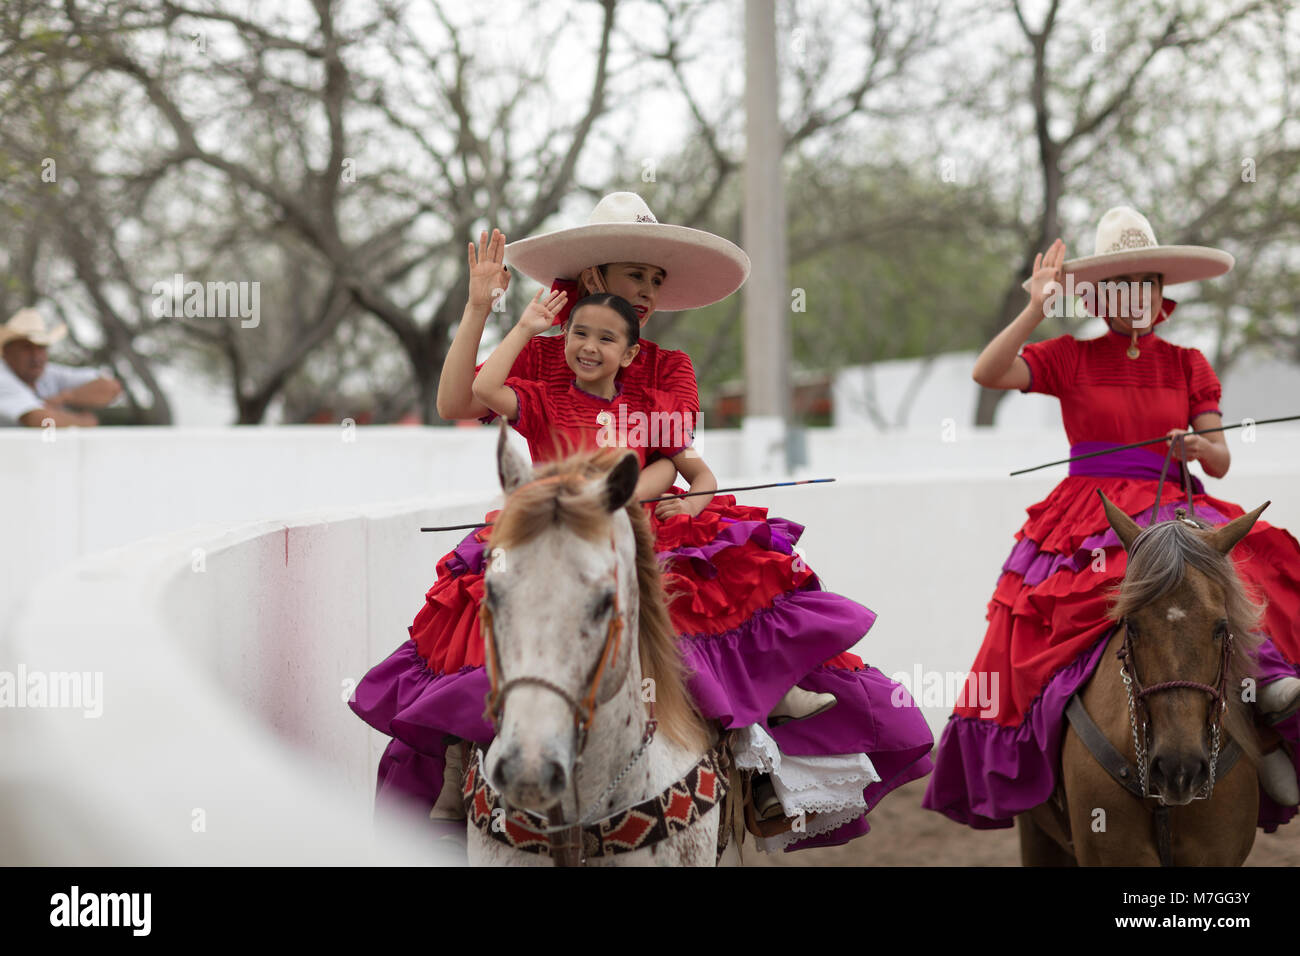 Matamoros, Tamaulipas, Mexico - February 25, 2018, Charreada Fiestas Mexicanas is part of the Charro Days Fiesta - Fiestas Mexicanas, A bi-national fe Stock Photo